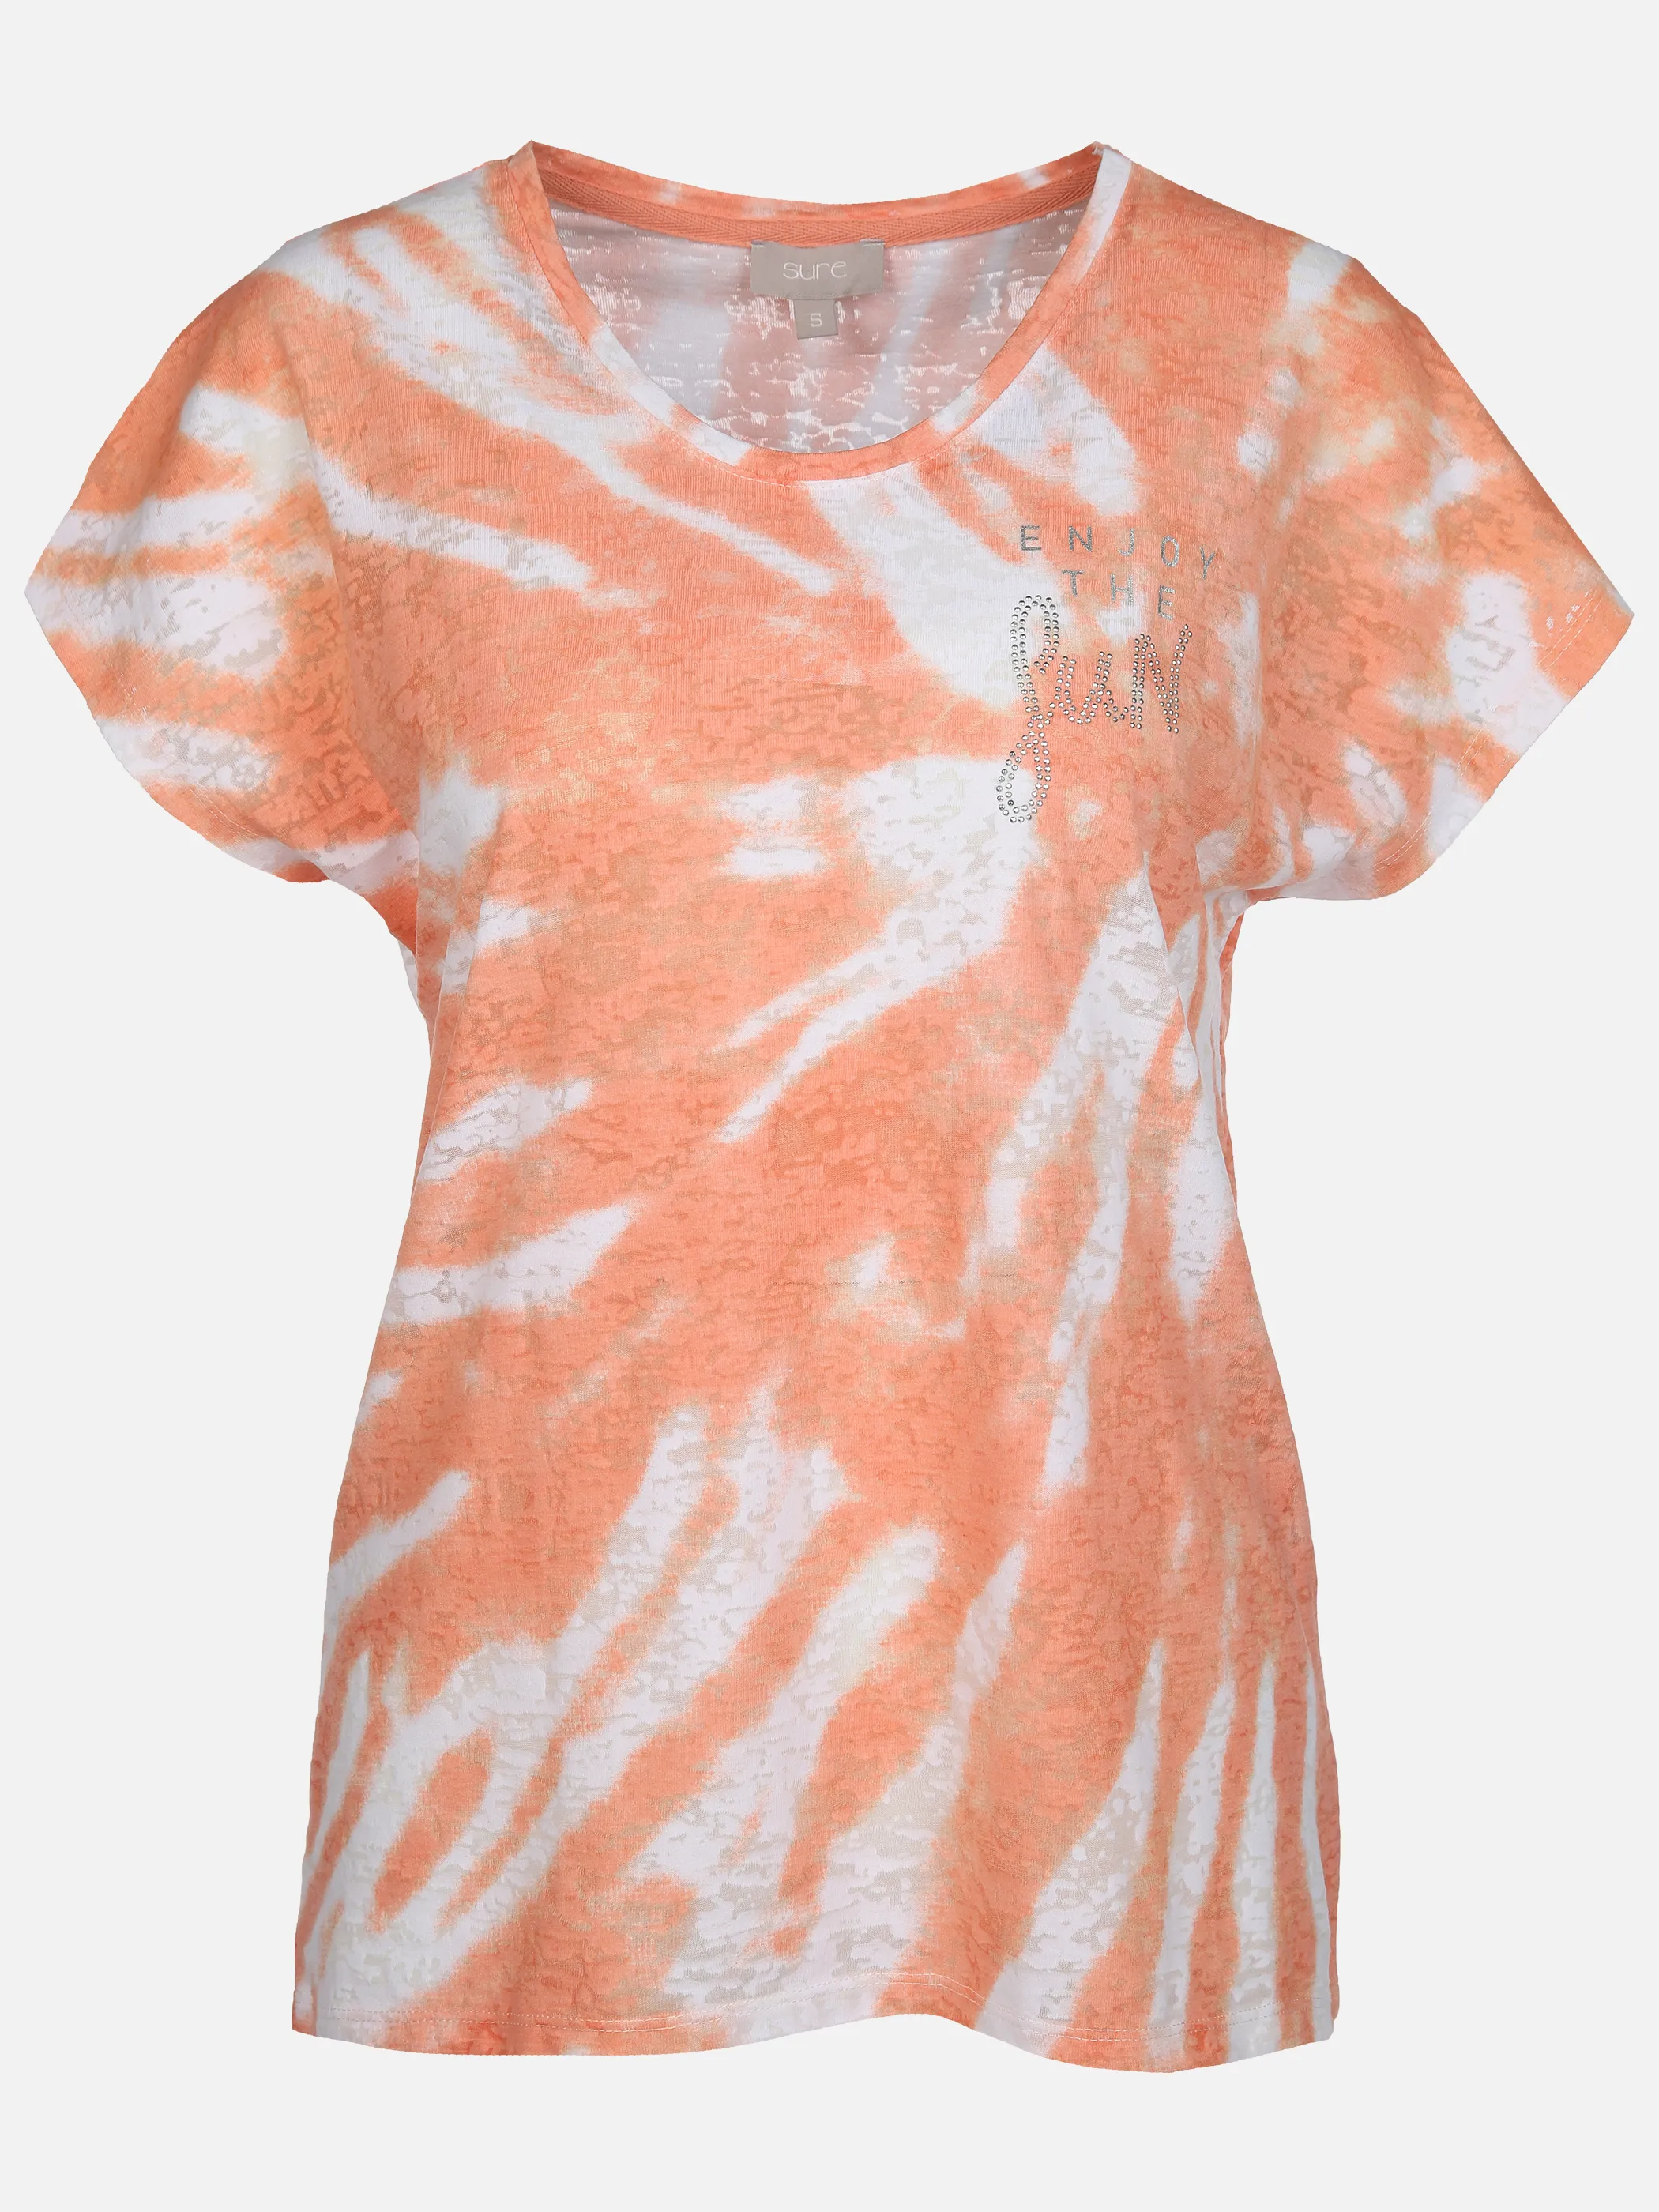 Sure Da-T-Shirt m. Batikdruck Orange 889927 PAPAYA 1